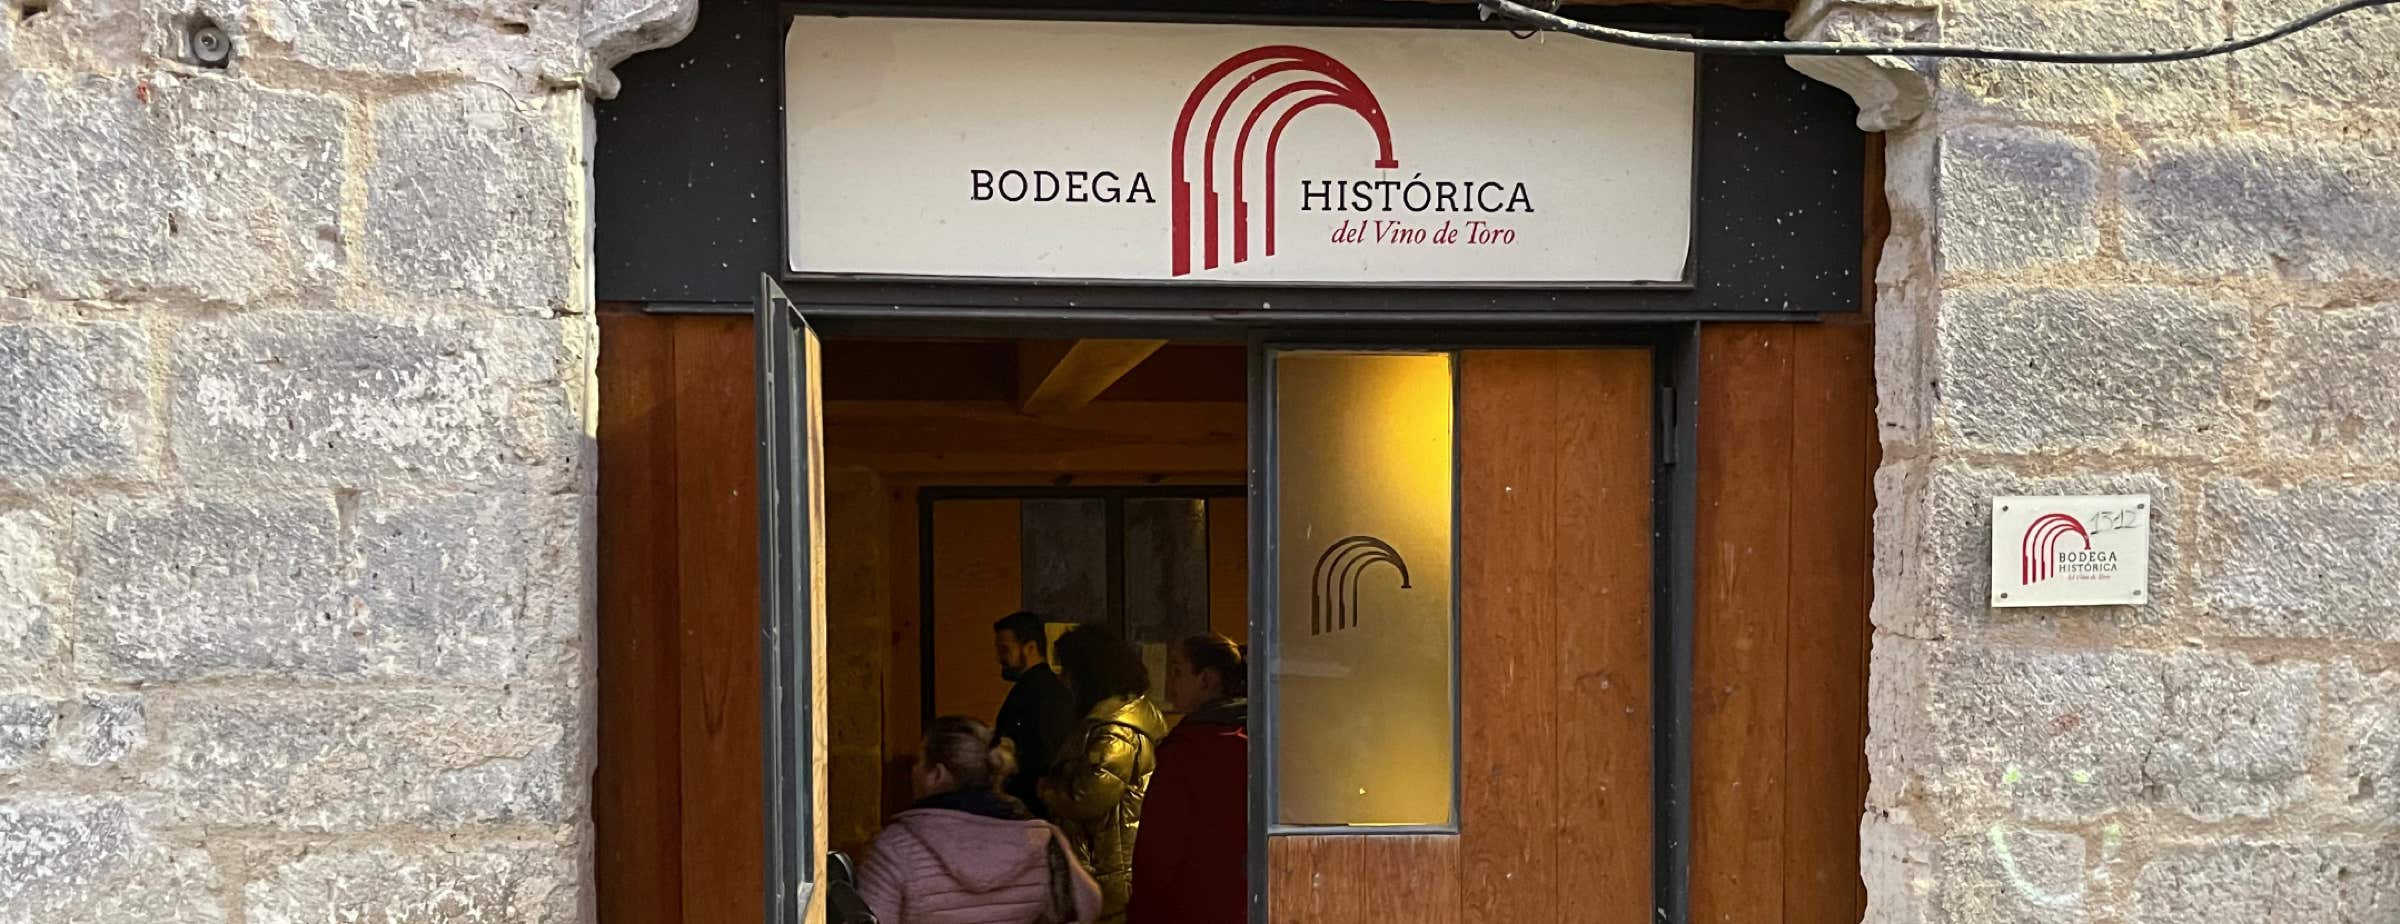 Foto de la entrada de la Bodega Histórica. La entrada es una puerta de madera. Sobre la entrada hay un cartel con "Bodega Histórica del Vino de Toro". La puerta está abierta y se ve gente dentro. Junto a la puerta se ven partes de la fachada de piedra gris.